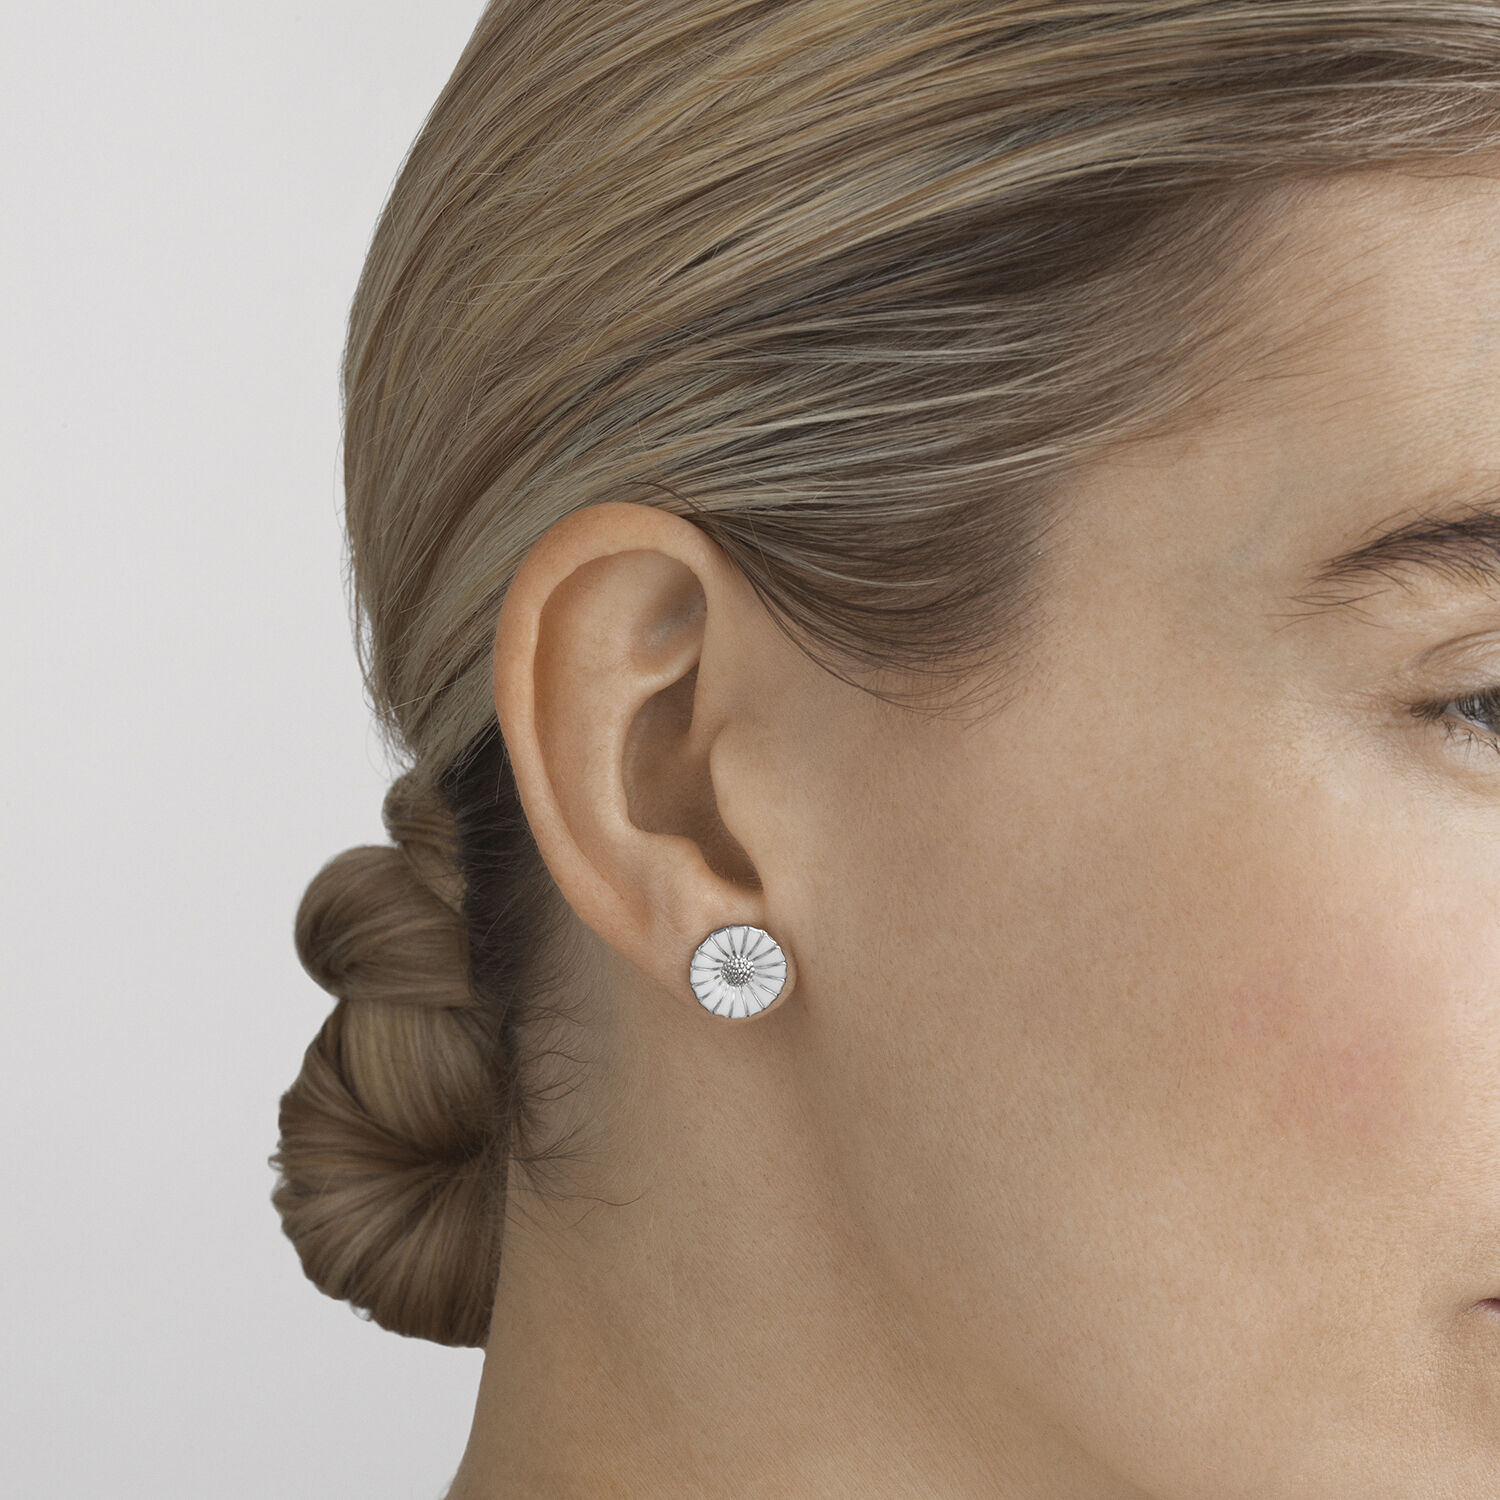 Daisy sterling silver earrings for women   Georg Jensen